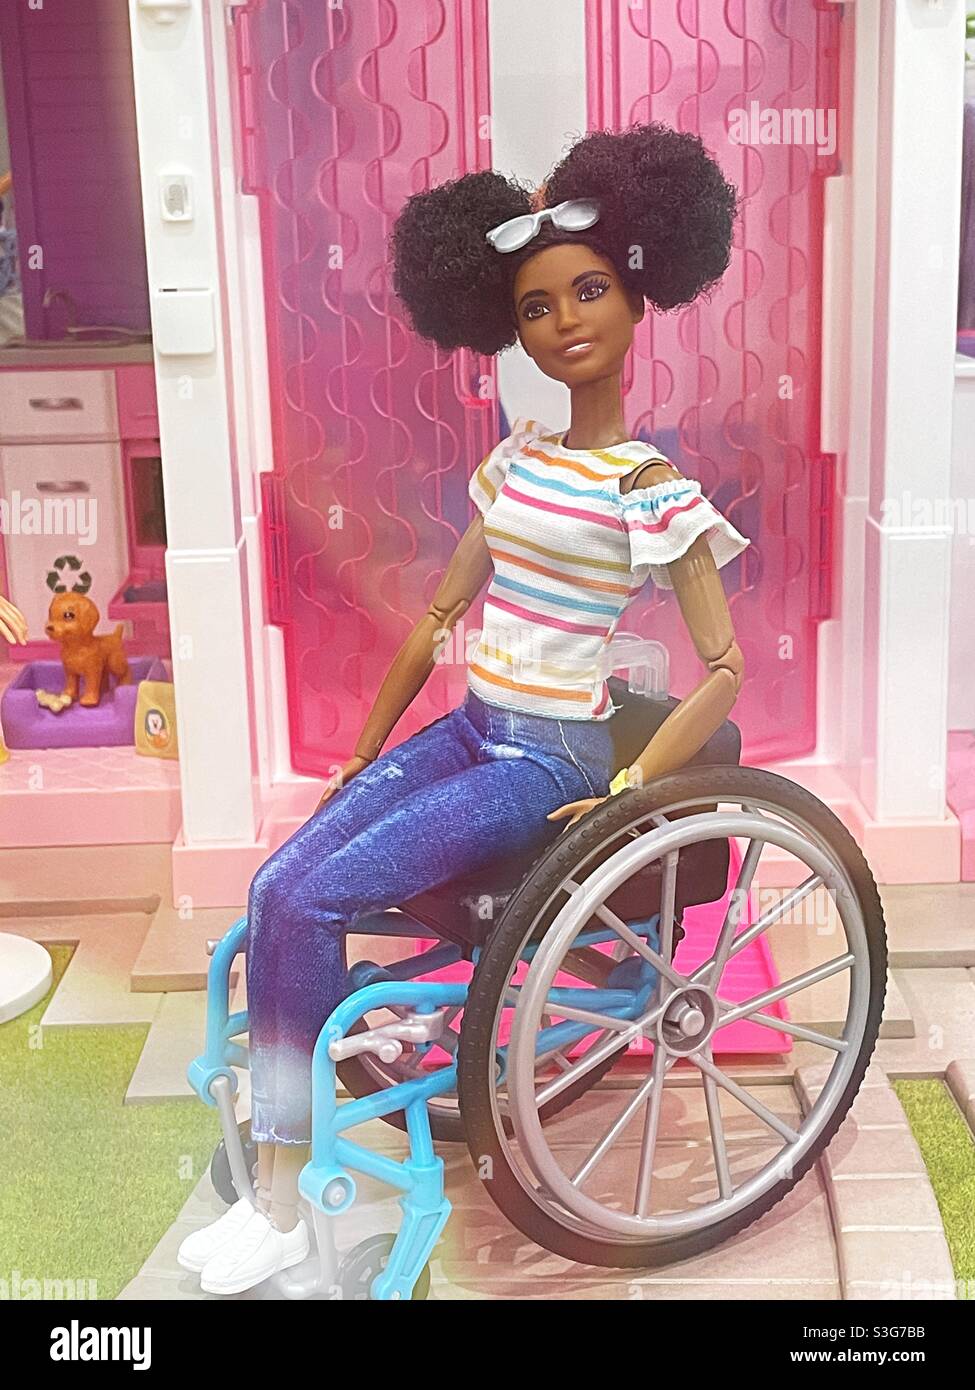 Behinderte Barbie hat ihren eigenen Rollstuhl, USA Stockfotografie - Alamy